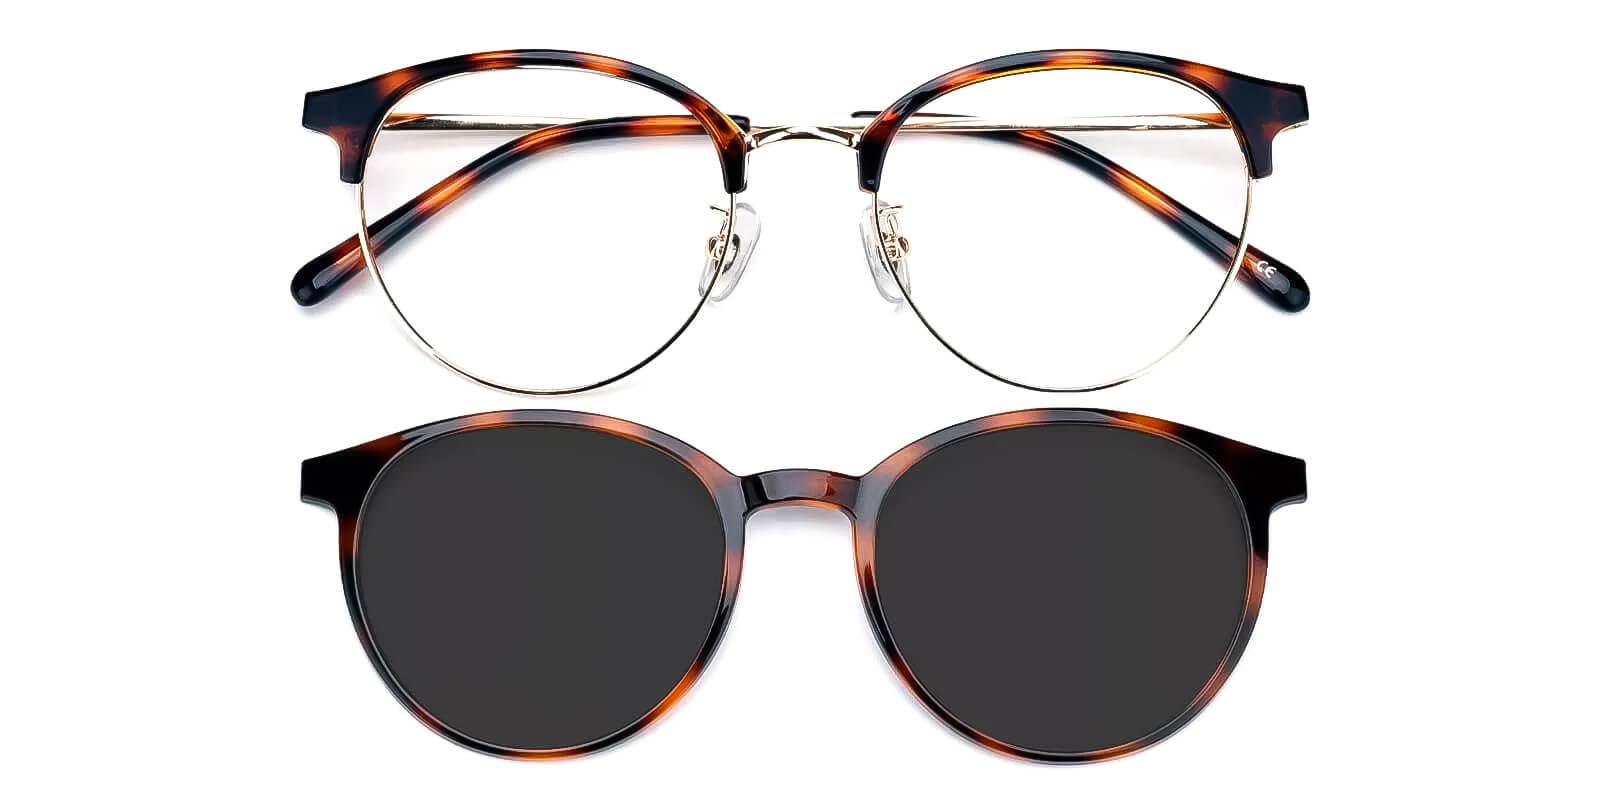 Similar Tortoise Metal Eyeglasses , Fashion , NosePads Frames from ABBE Glasses